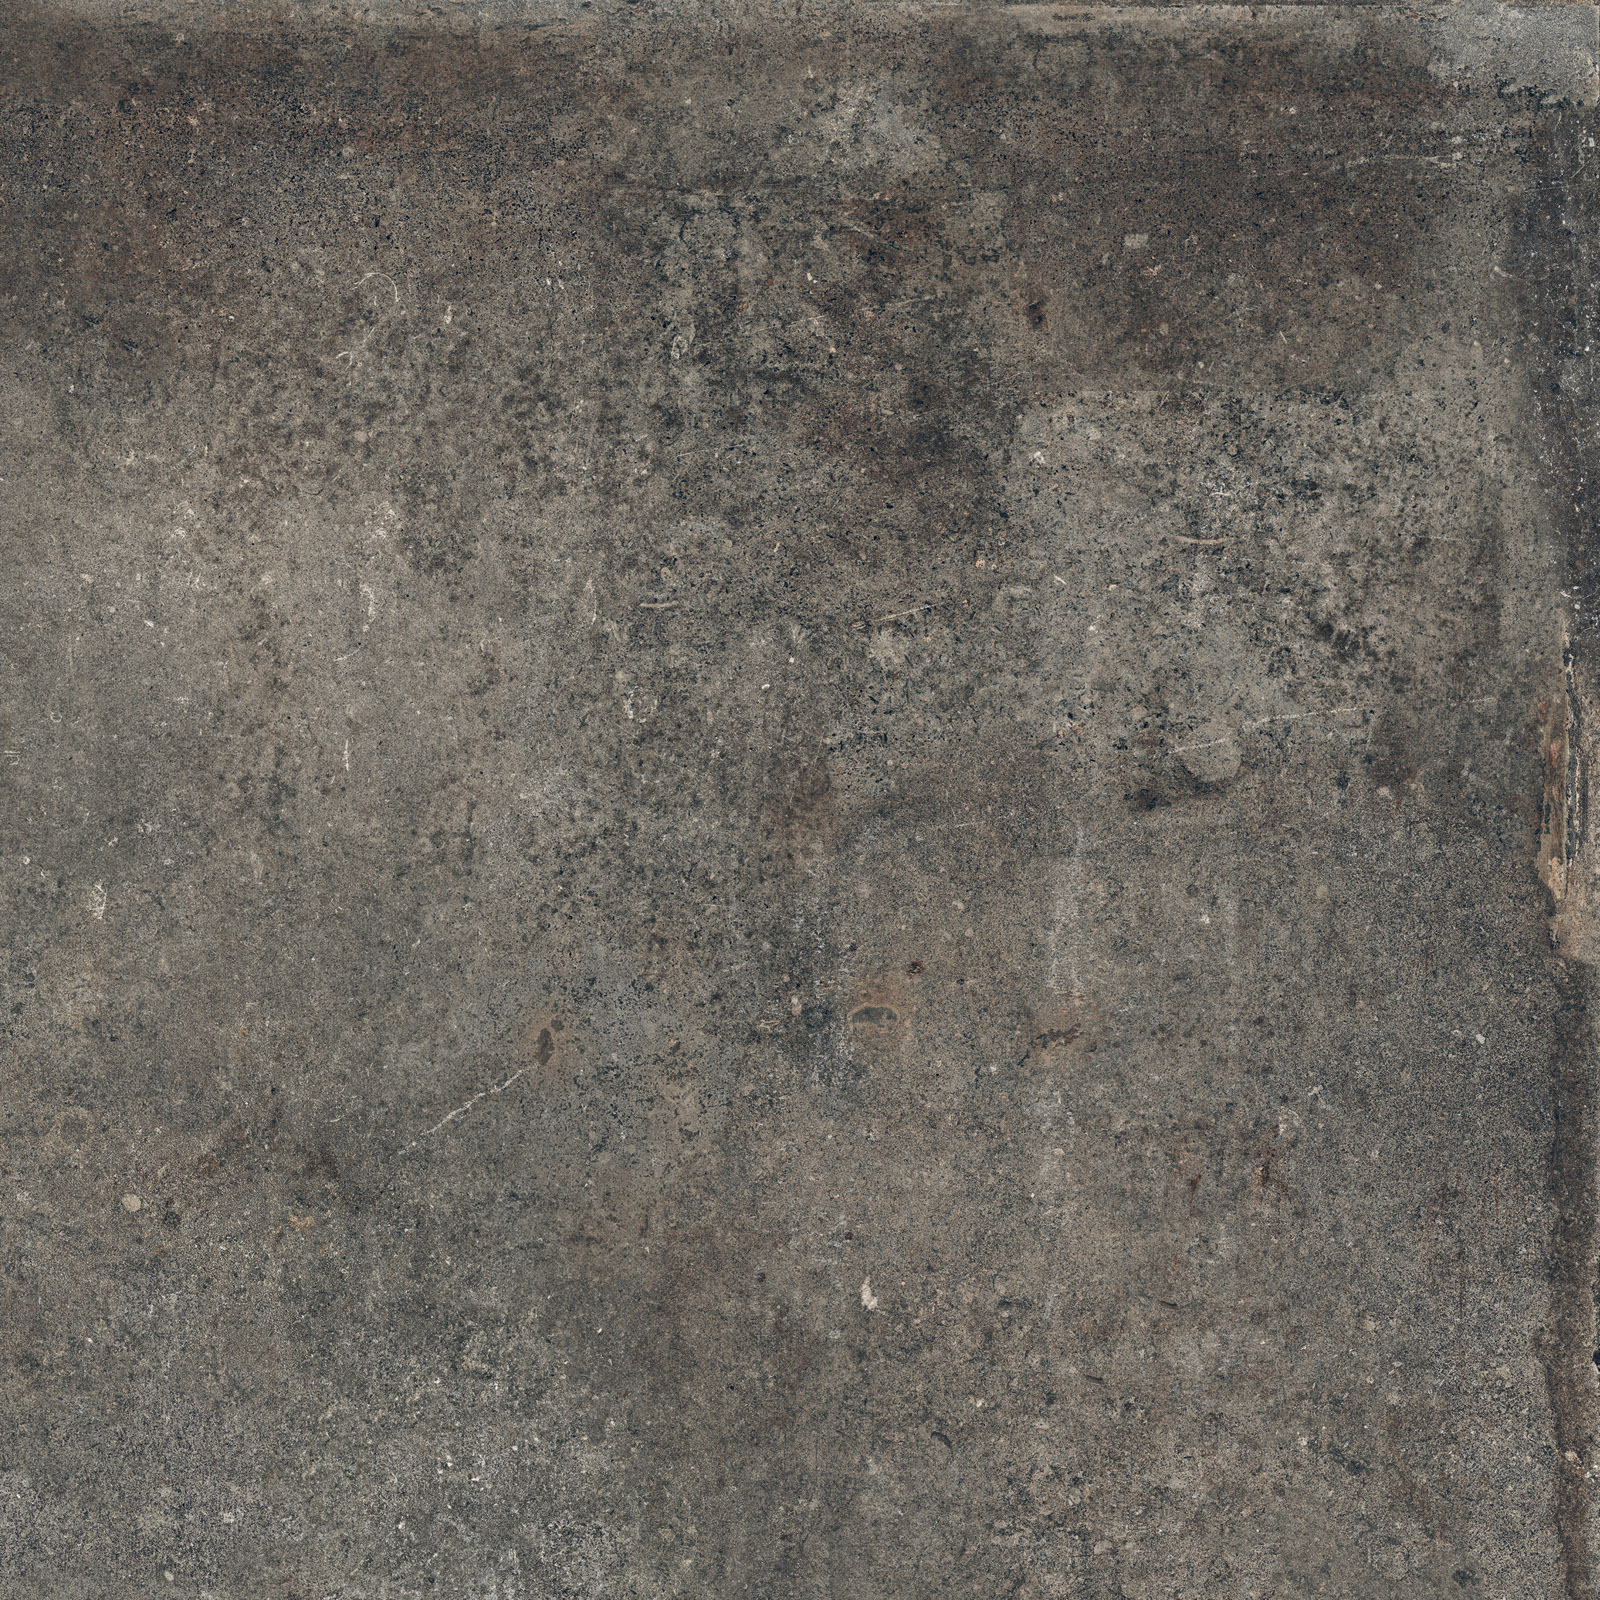 Flaviker Re Tour Bodenfliese Outdoor Betonoptik Mud matt 60x60 cm rekt. R11C